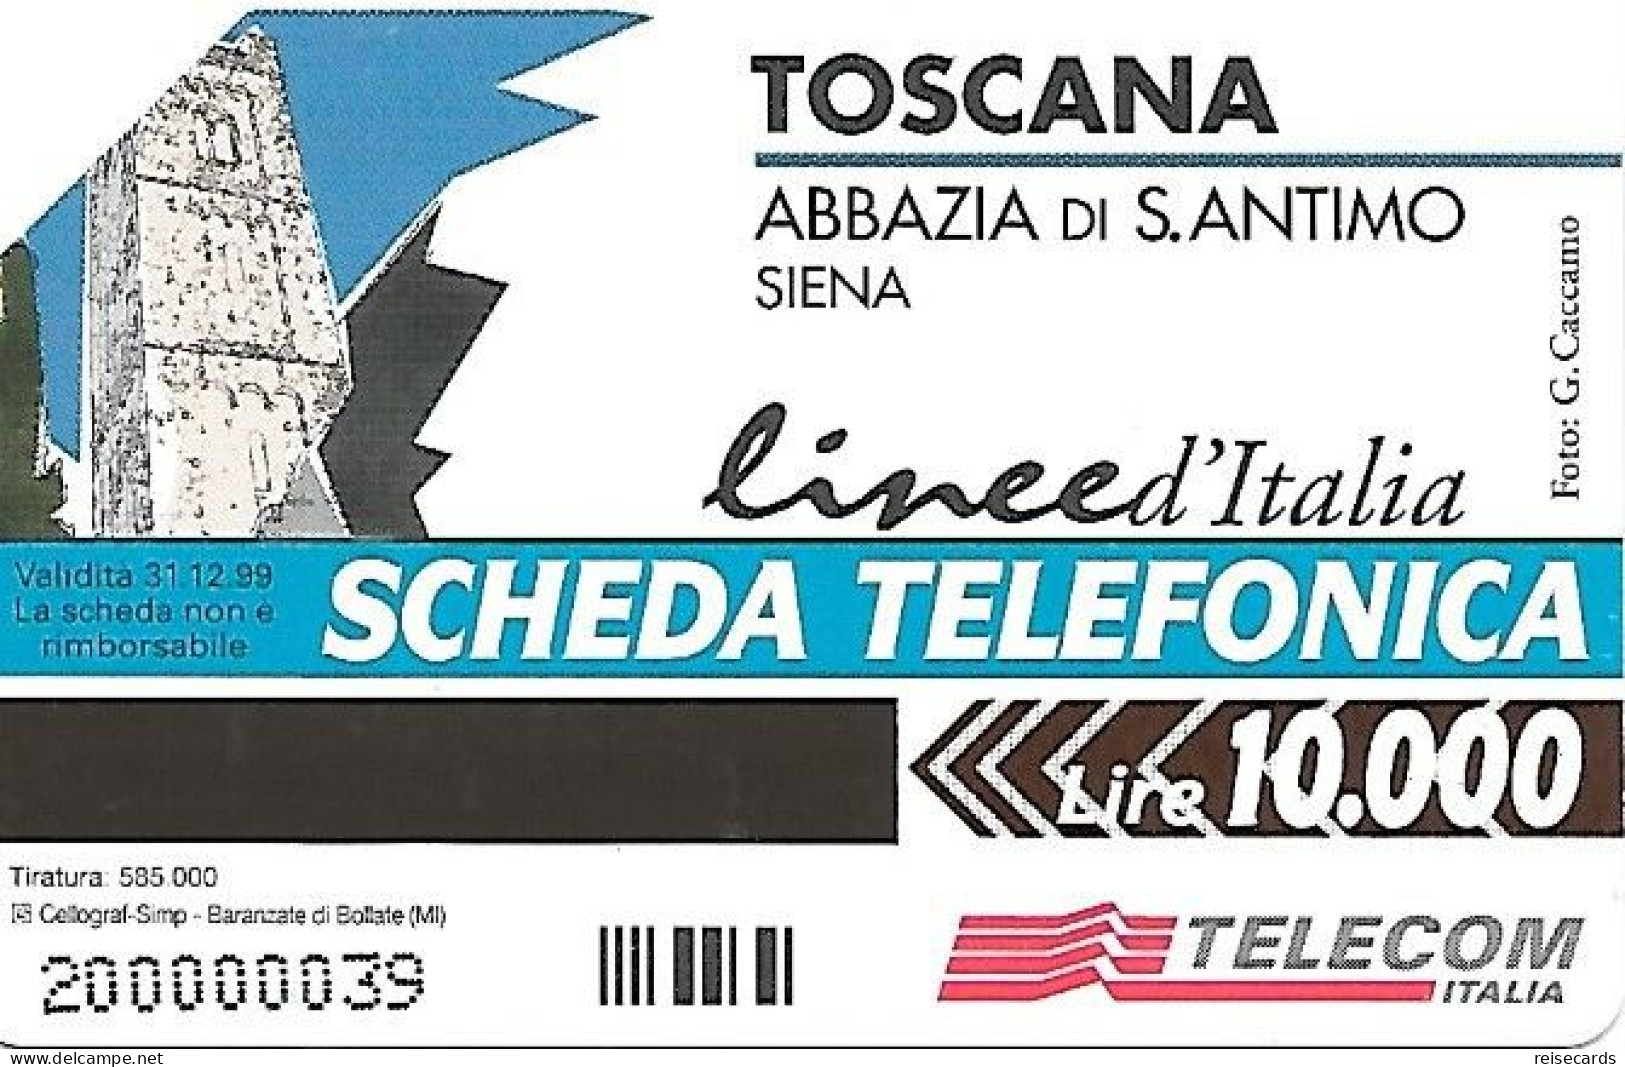 Italy: Telecom Italia - Toscana, Abbazia Di Santimo, Siena - Públicas  Publicitarias